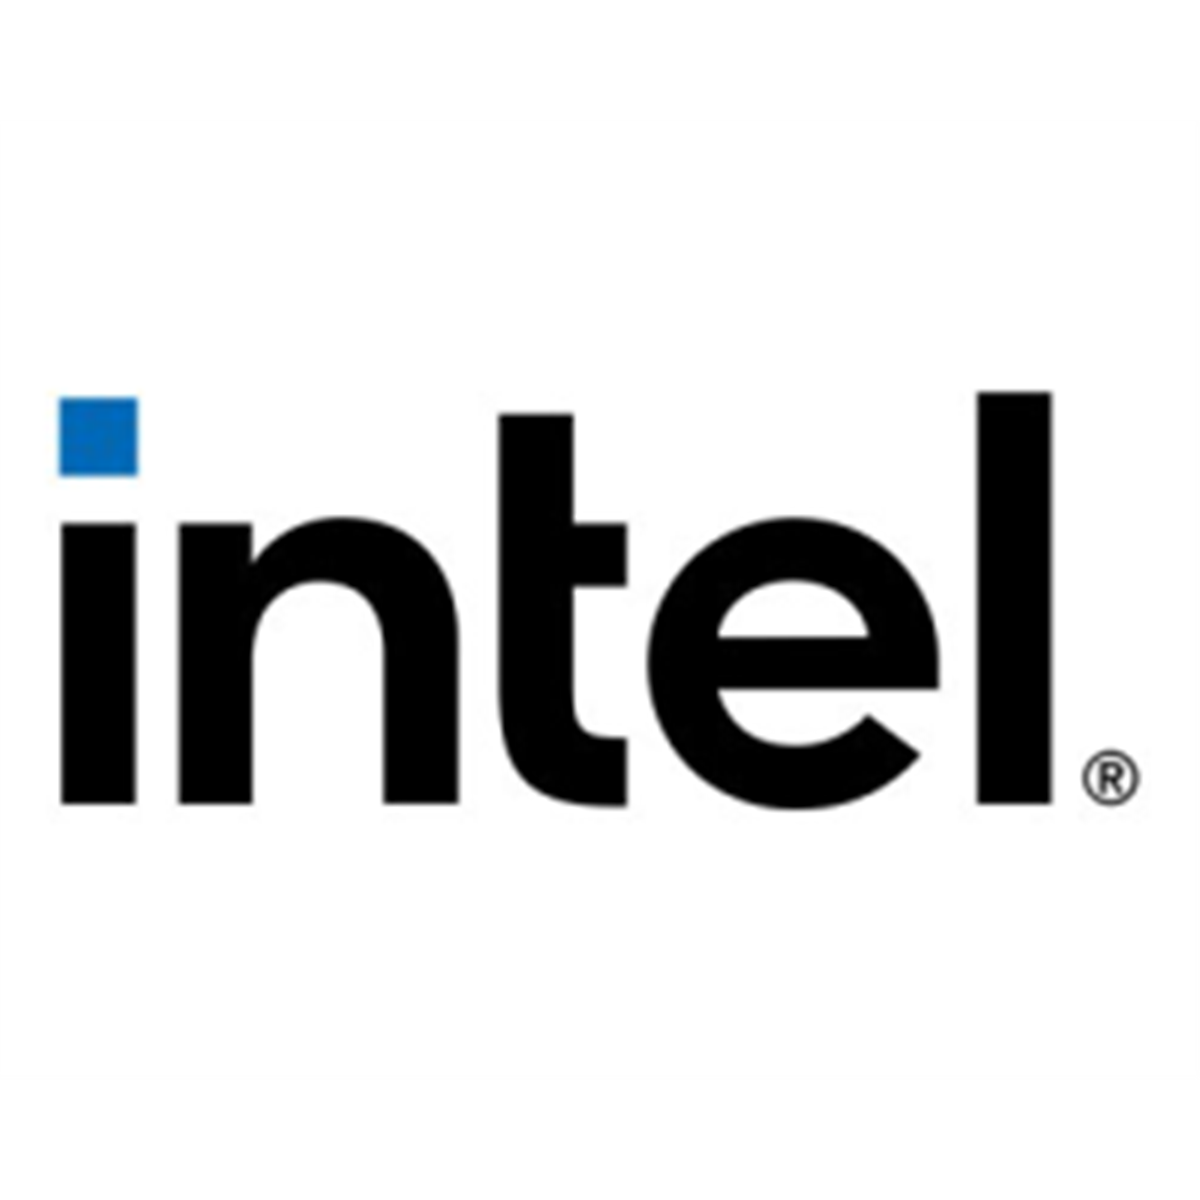 Intel 4 Port PCIE x8 Switch AIC